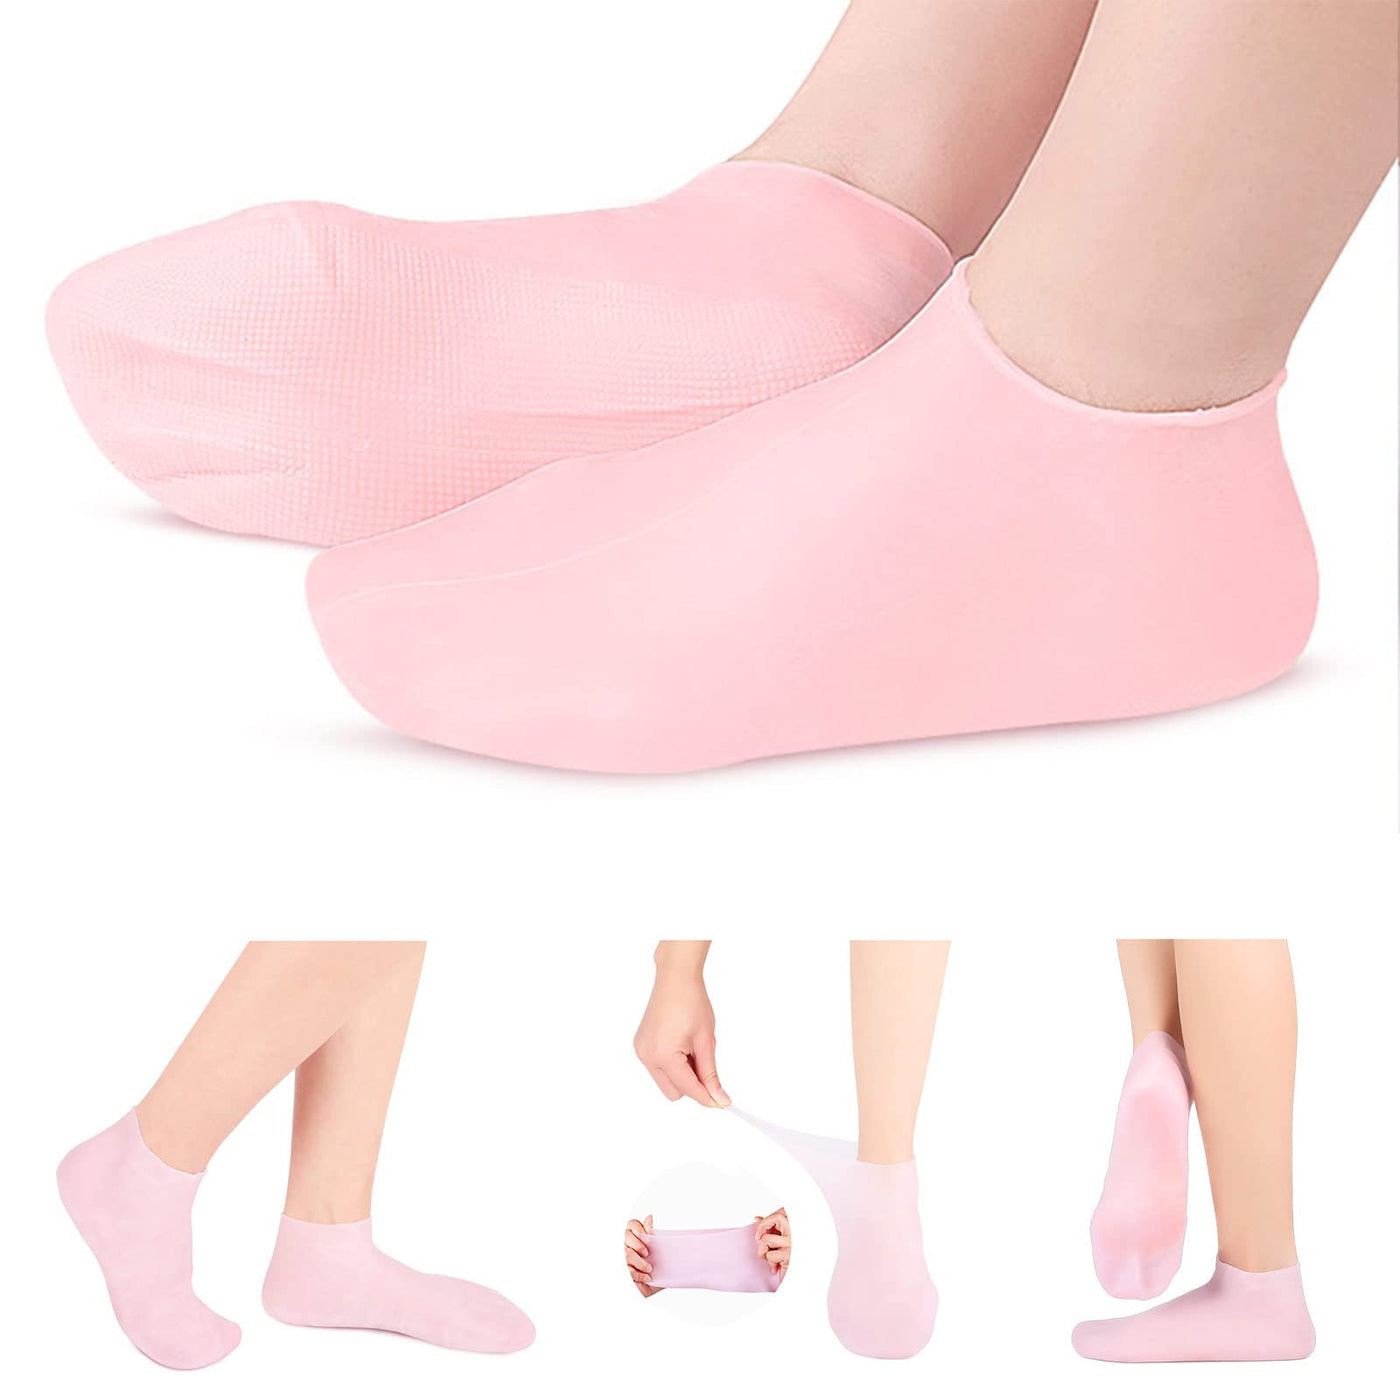 Silicone Moisturizing Socks